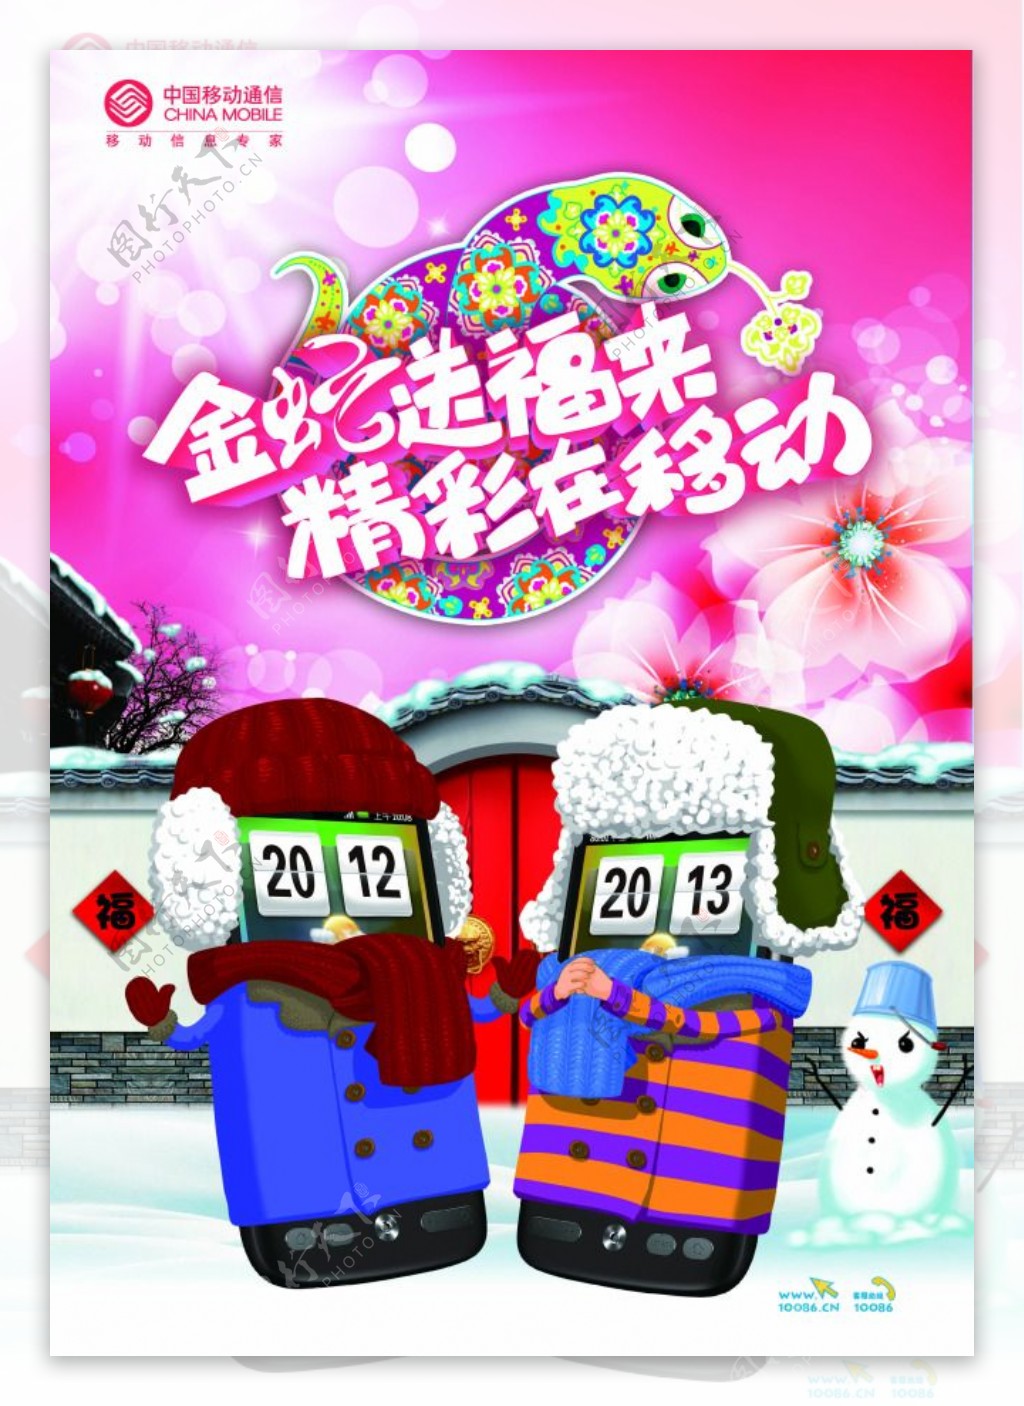 中国移动联通新年祝福海报